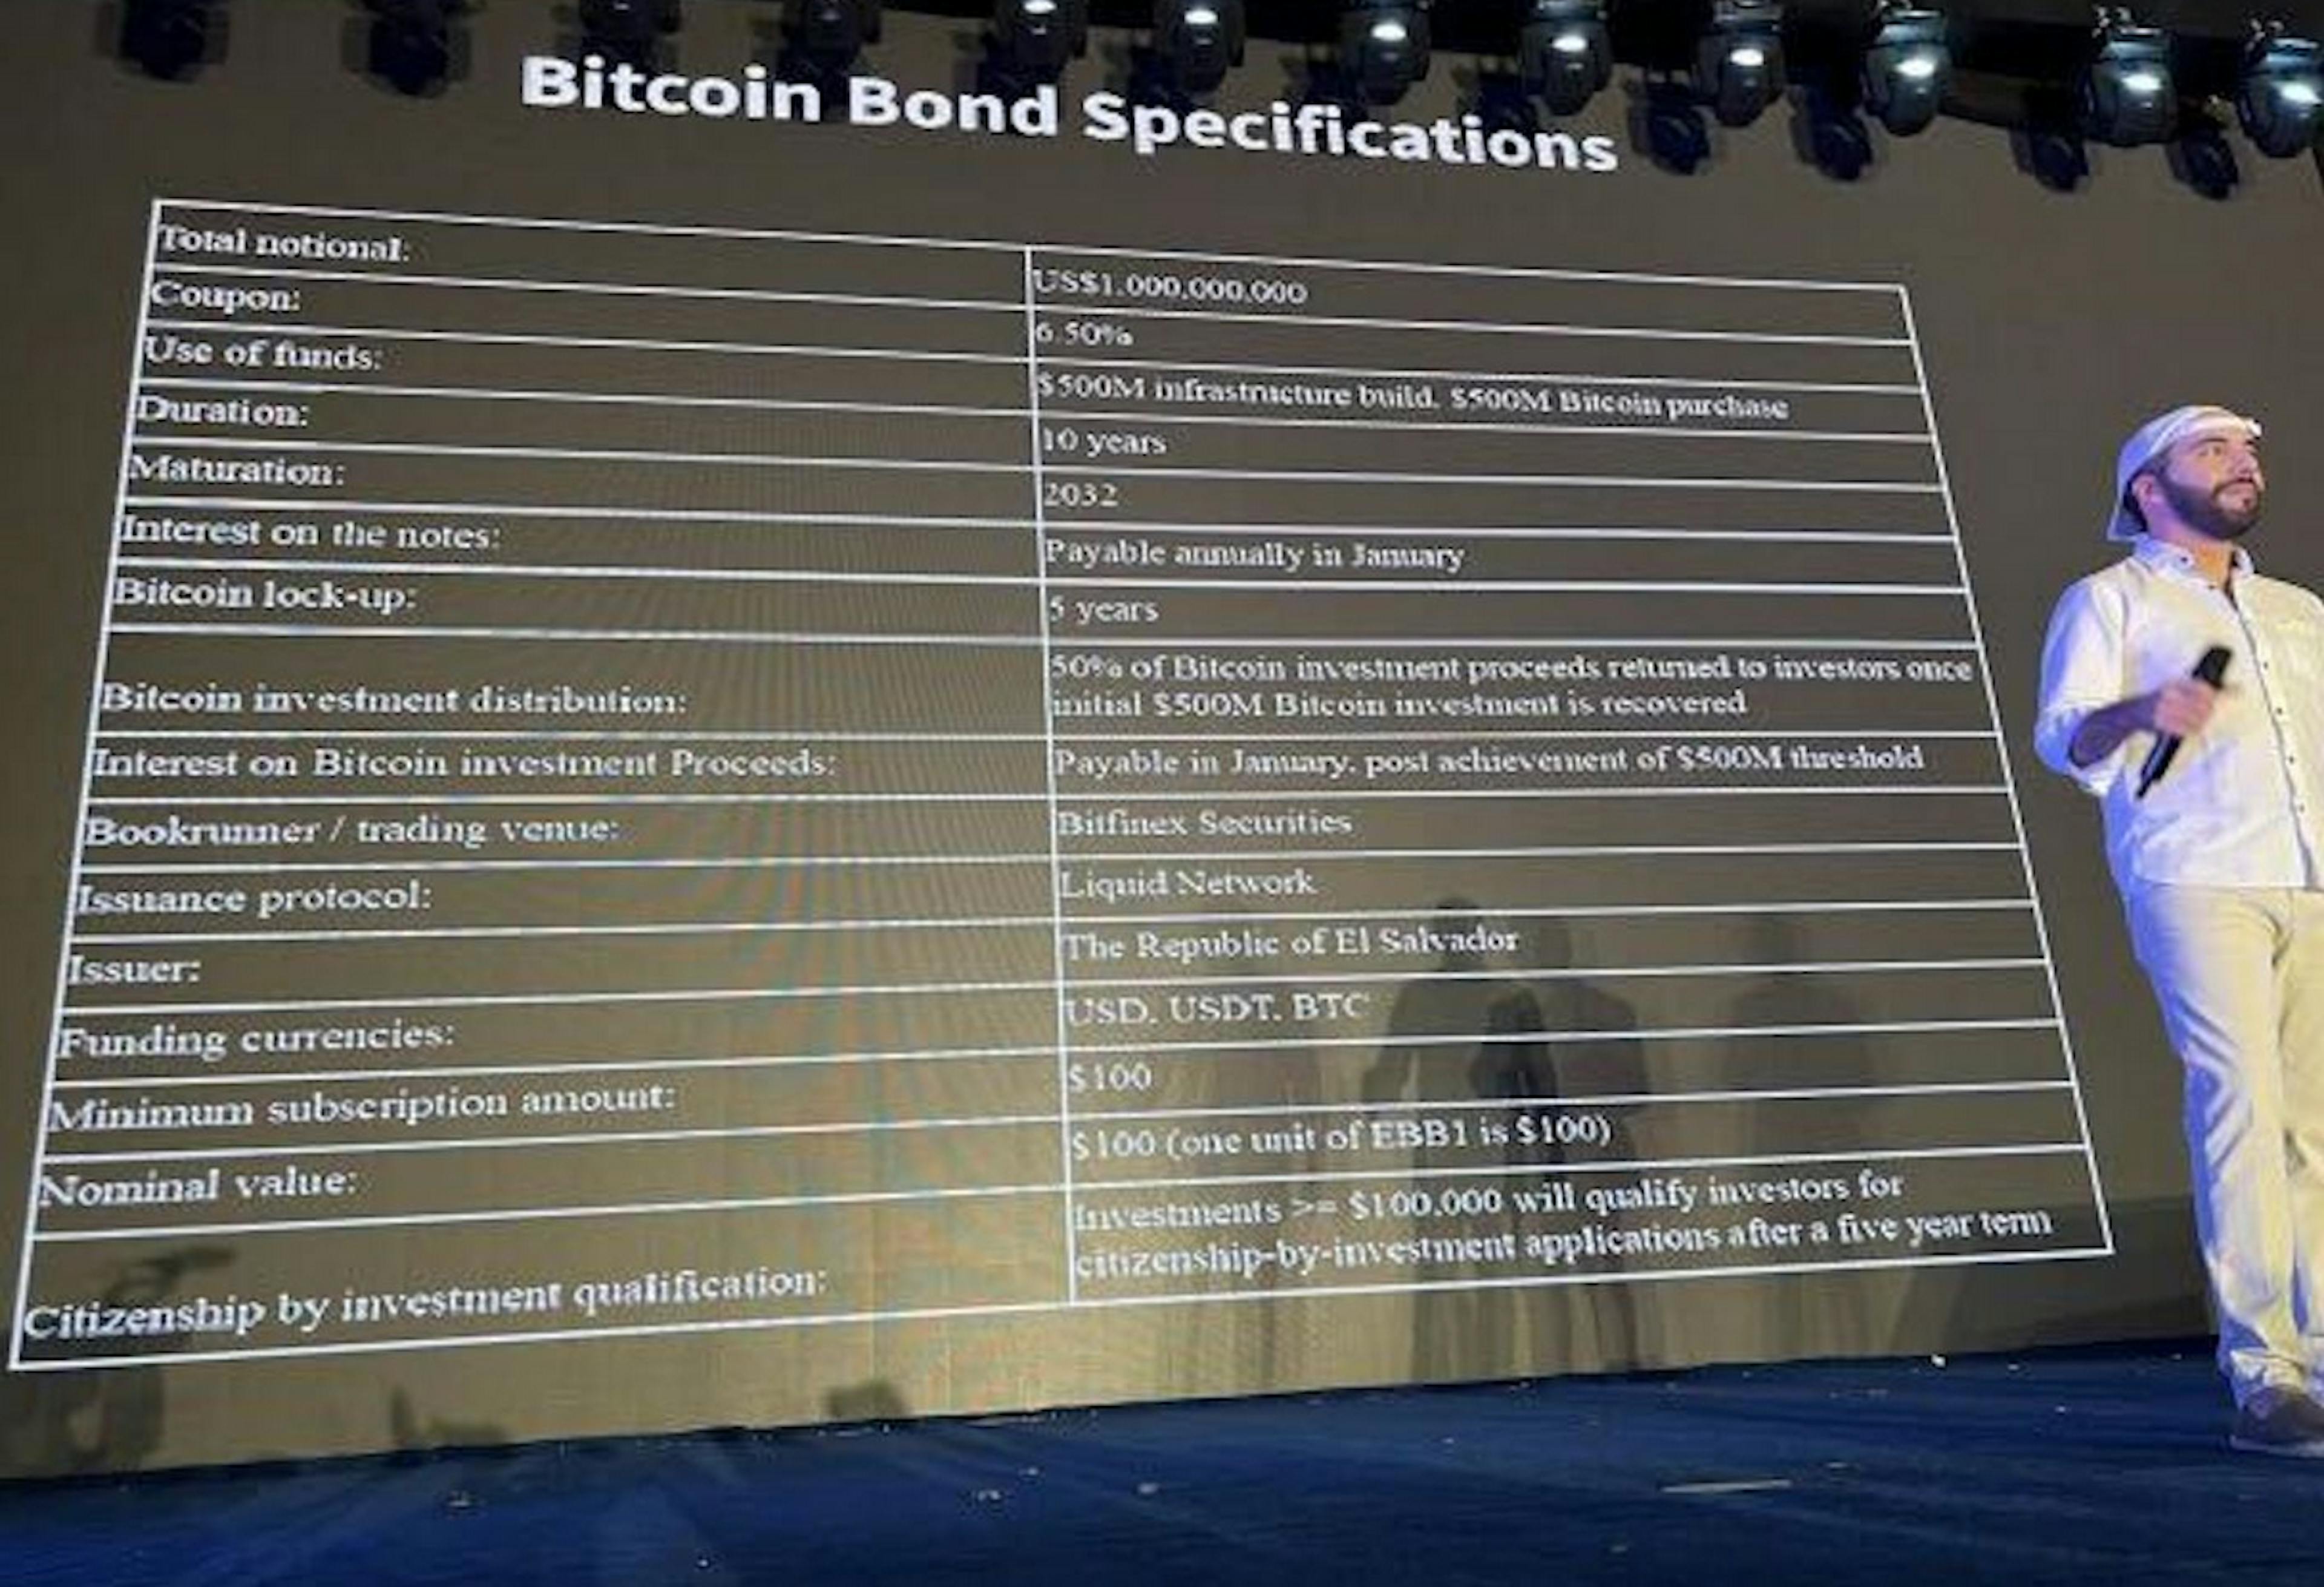 이미지 출처: https://www.coindesk.com/markets/2021/11/22/junk-rated-el-salvadors-bitcoin-bonds-look-explosive-think-volcano/